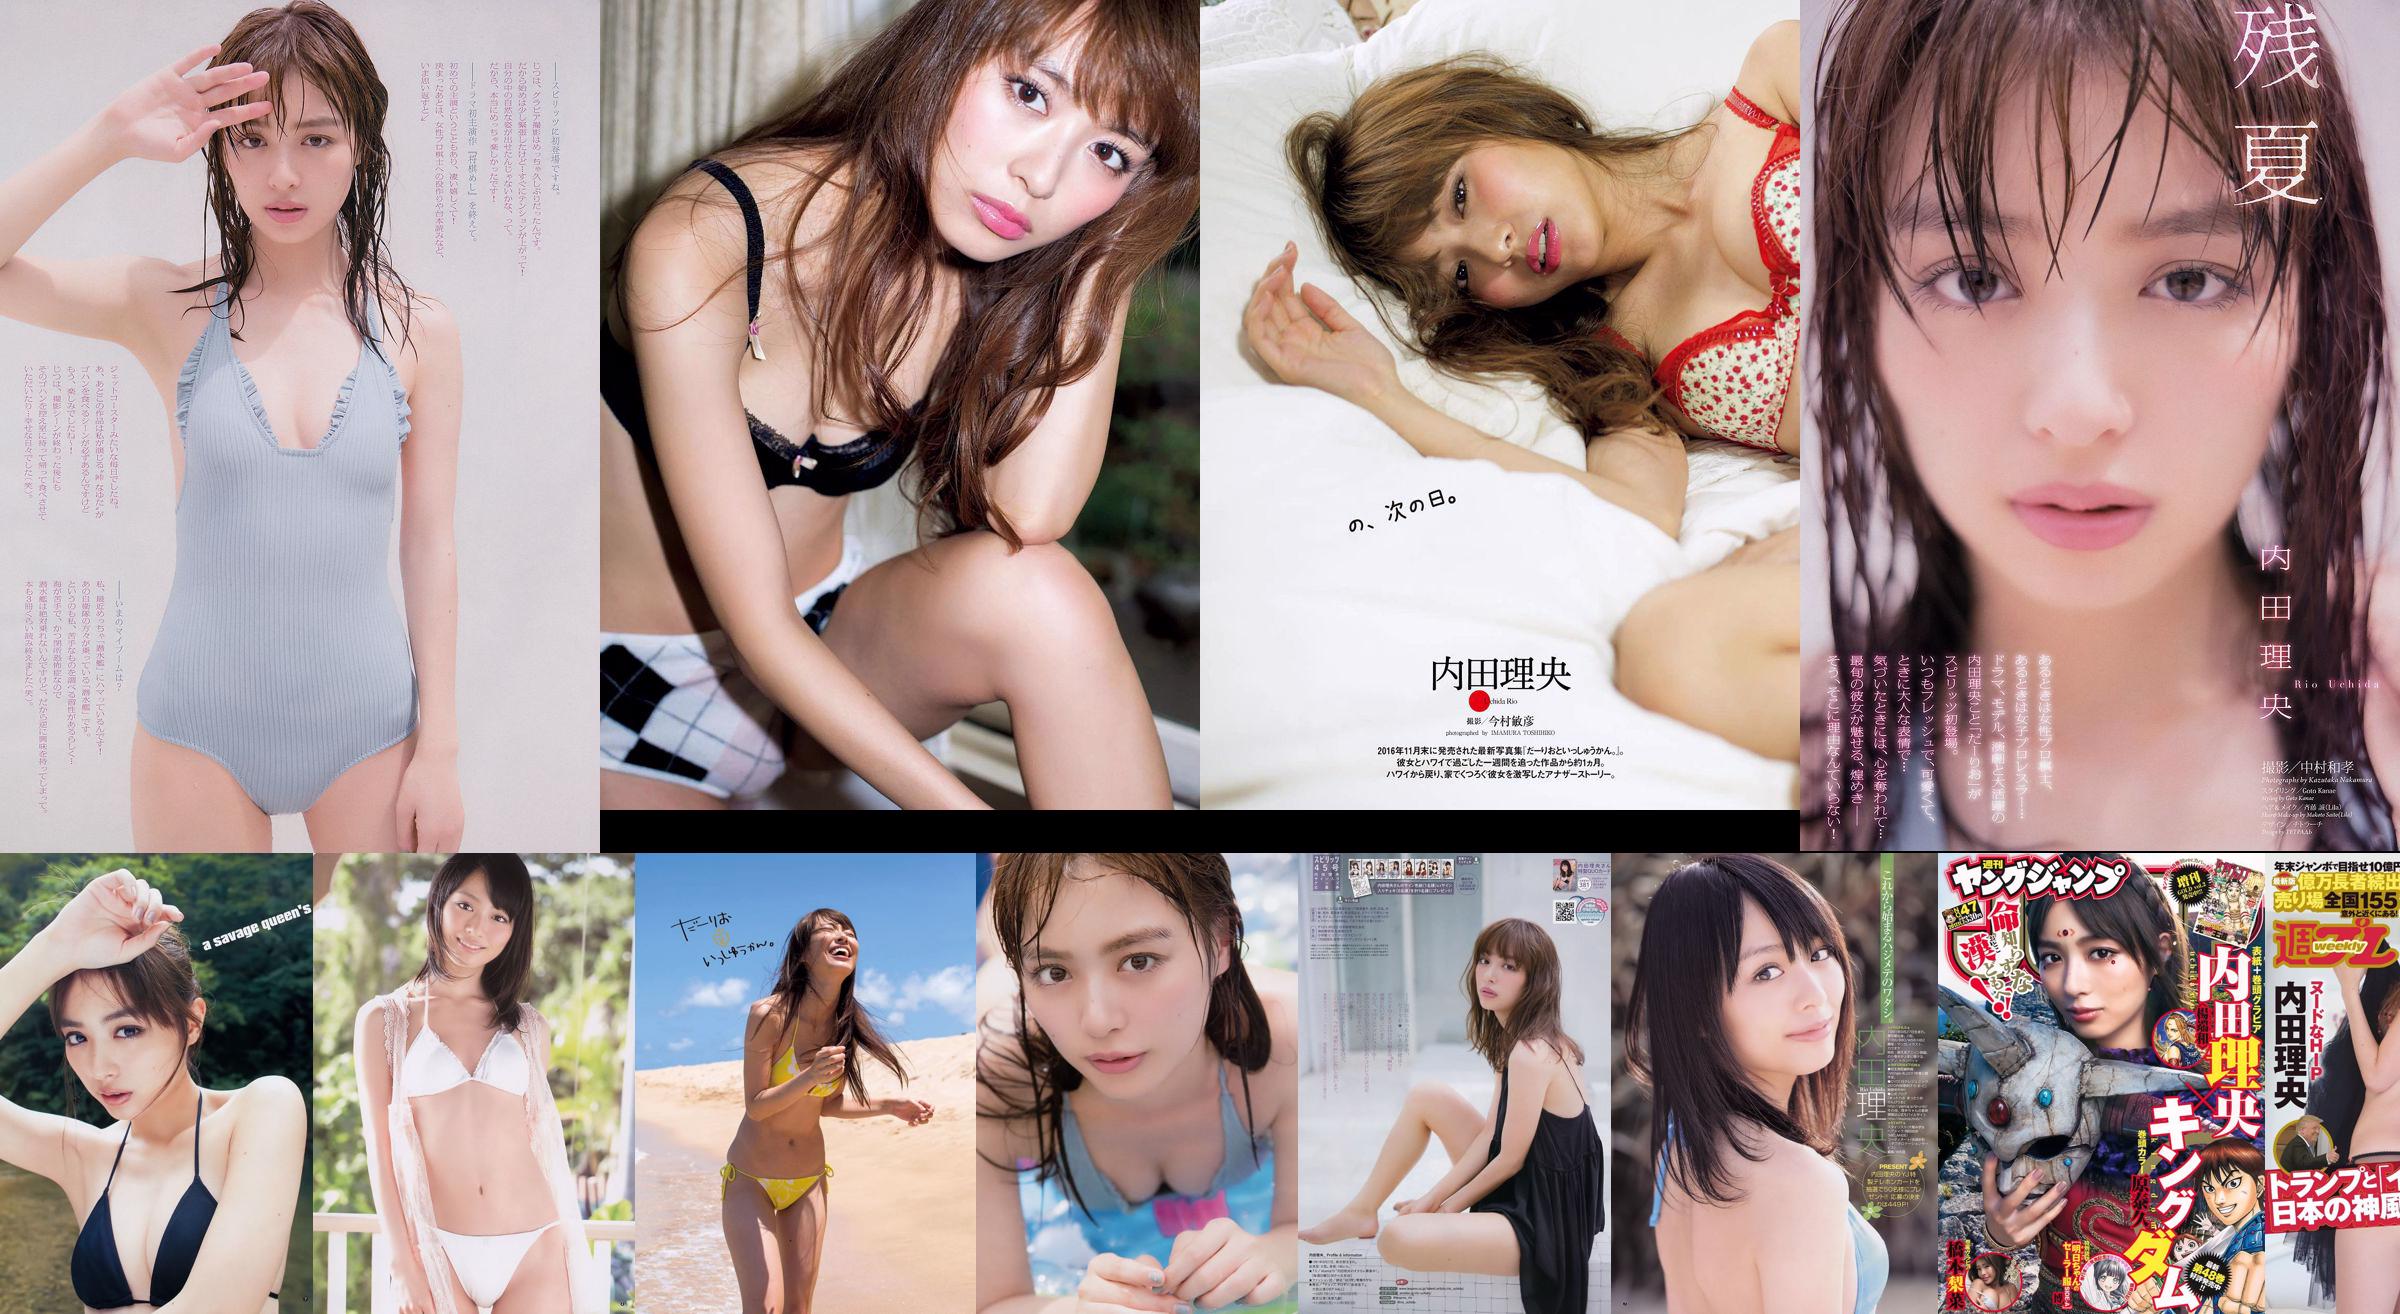 Haruna Kojima YUNA Riho Yoshioka Akemi Darenogare Ruriko Kojima Mana Sakura [Playboy Semanal] 2015 Fotografia No.34-35 No.2f2ef6 Página 1